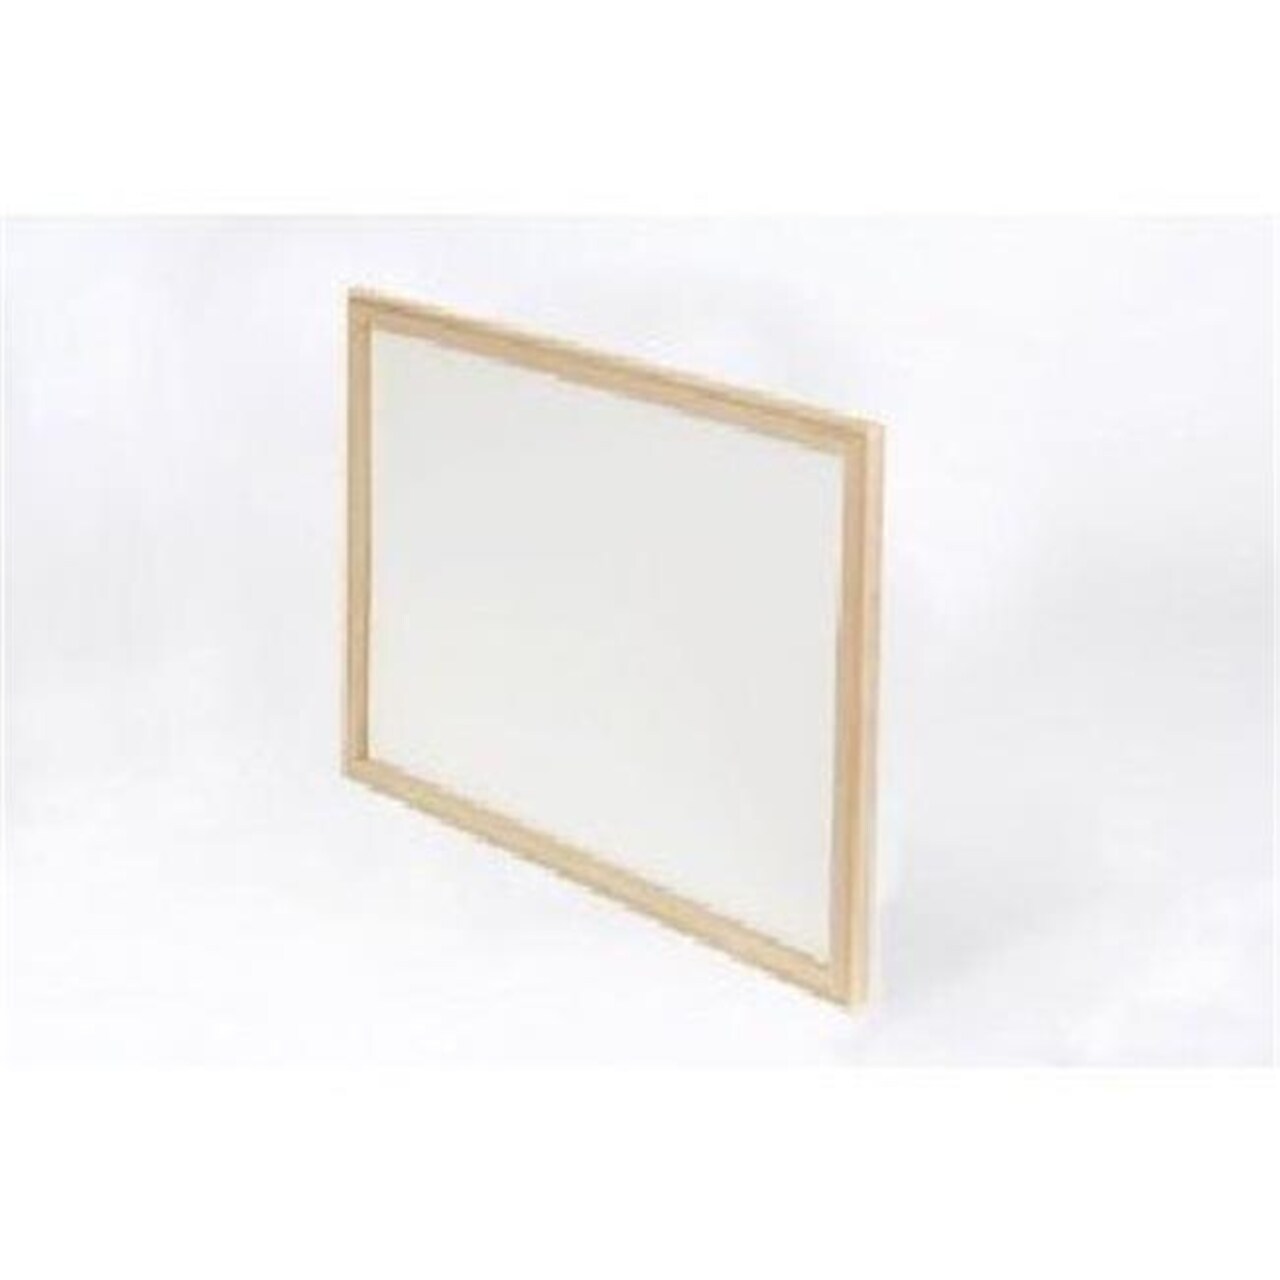 Crestline 17620 18 in. x 24 in. Hardwood Framed White Dry-Erase Board